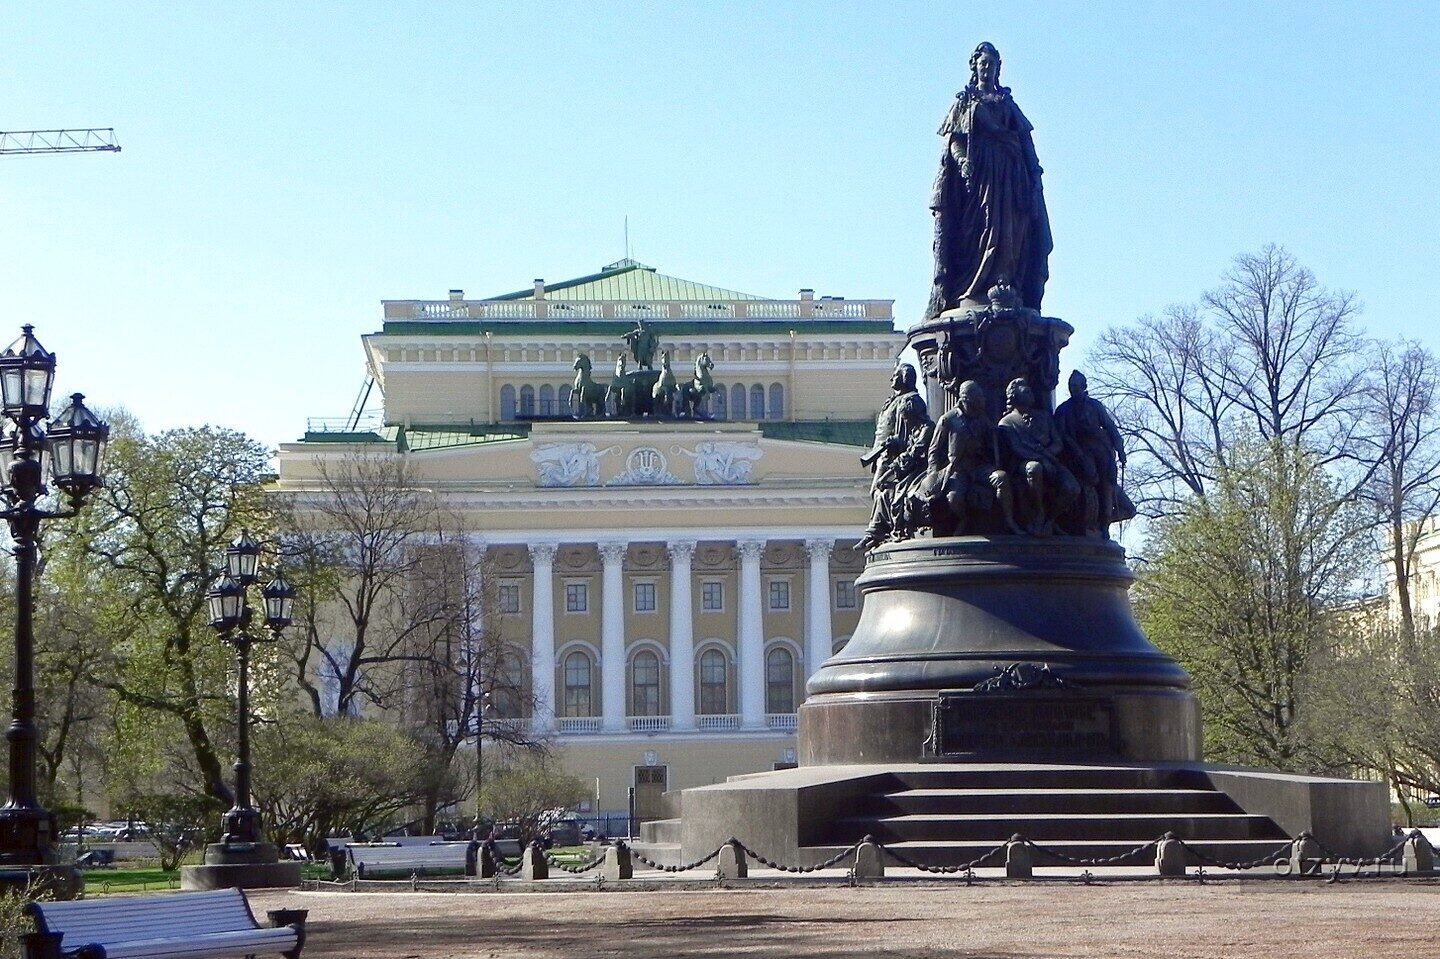 Площадь Островского - Александринский театр и памятник Екатерине Великой